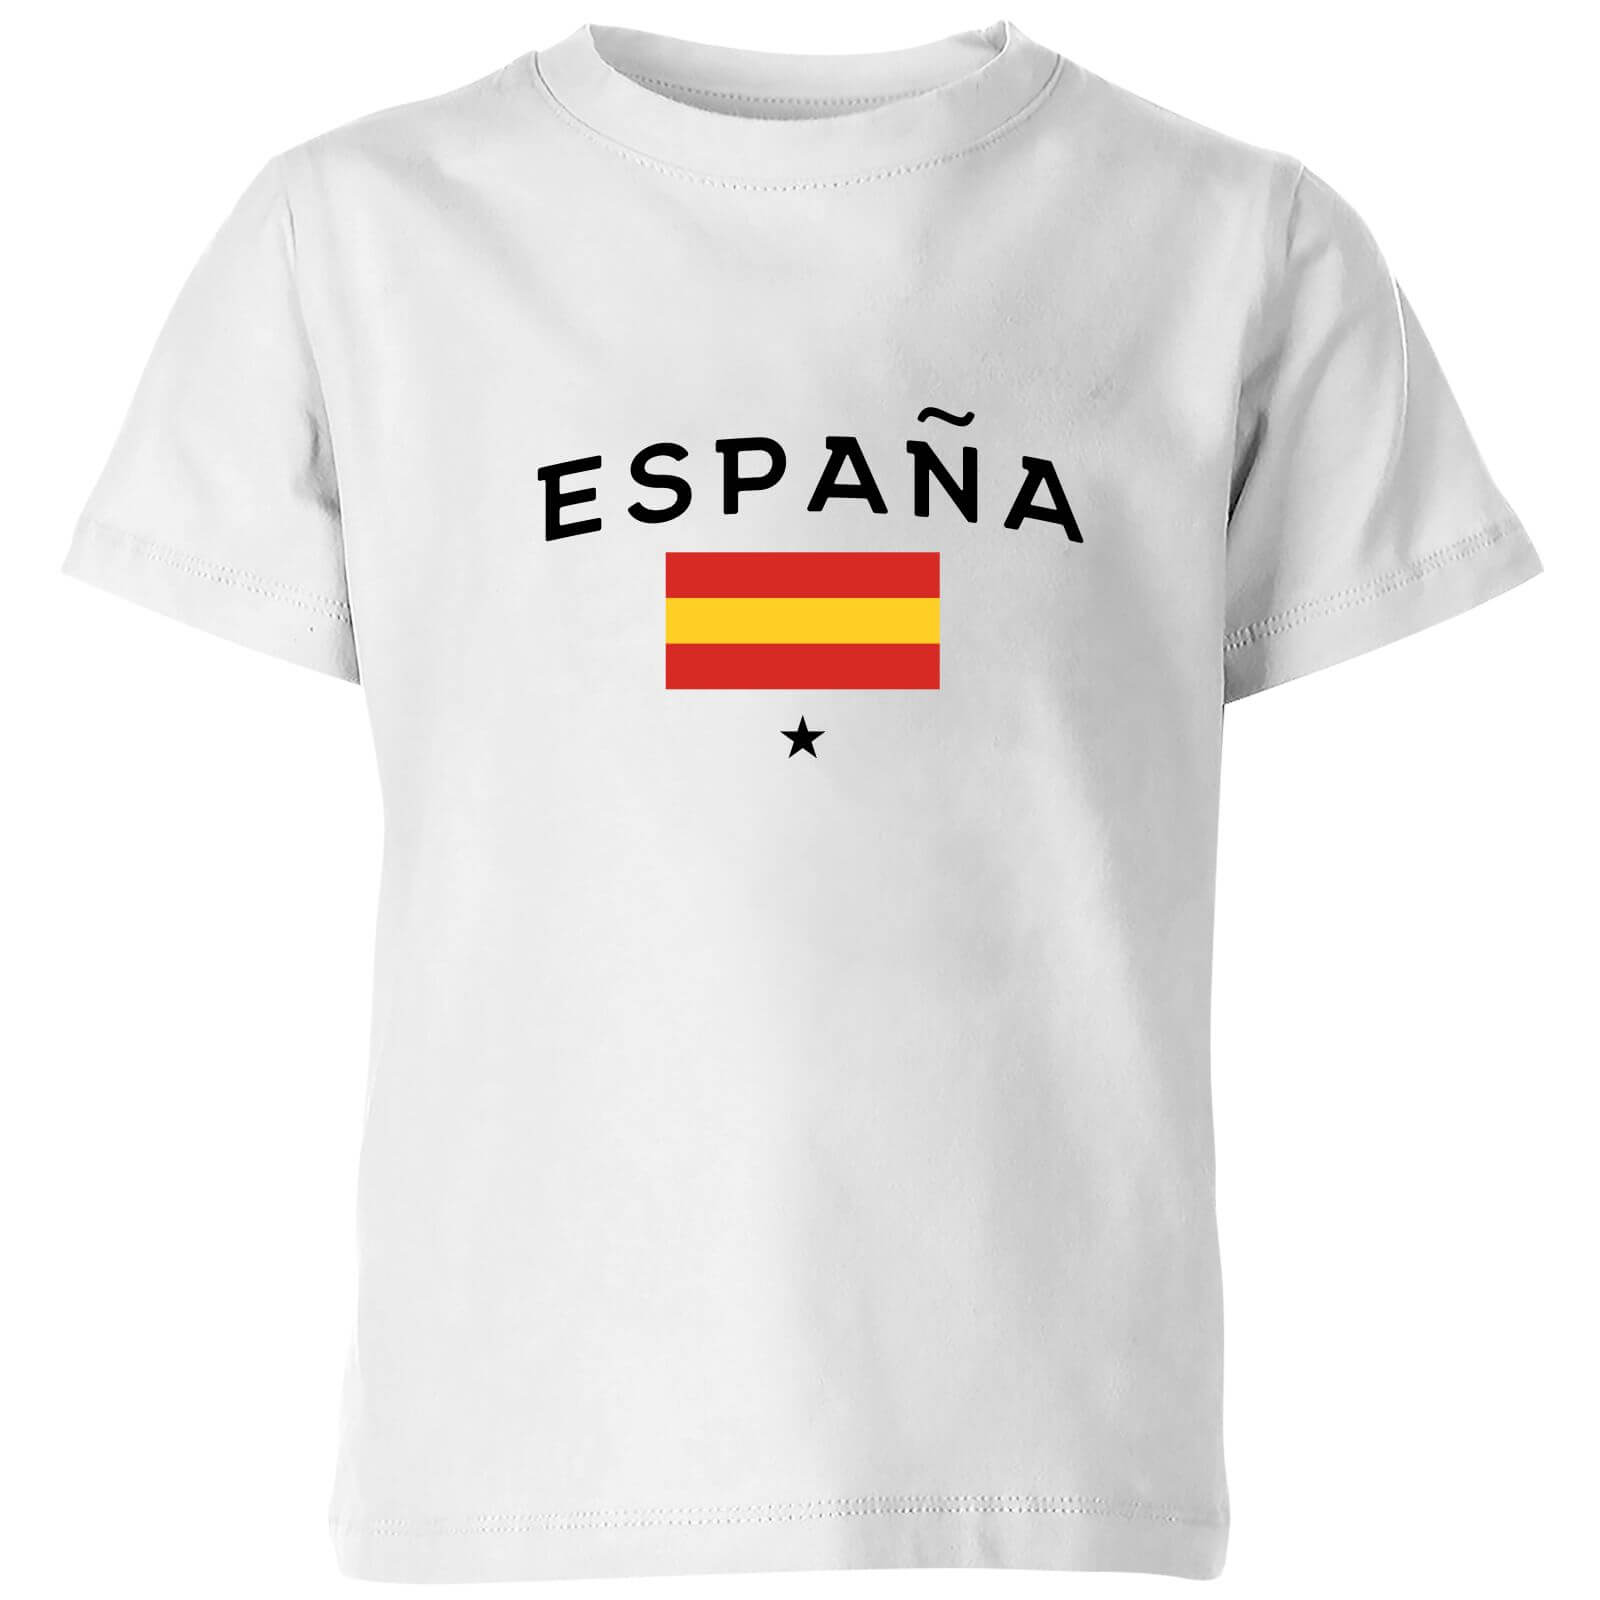 Espana Kids' T-Shirt - White - 3-4 Years - White